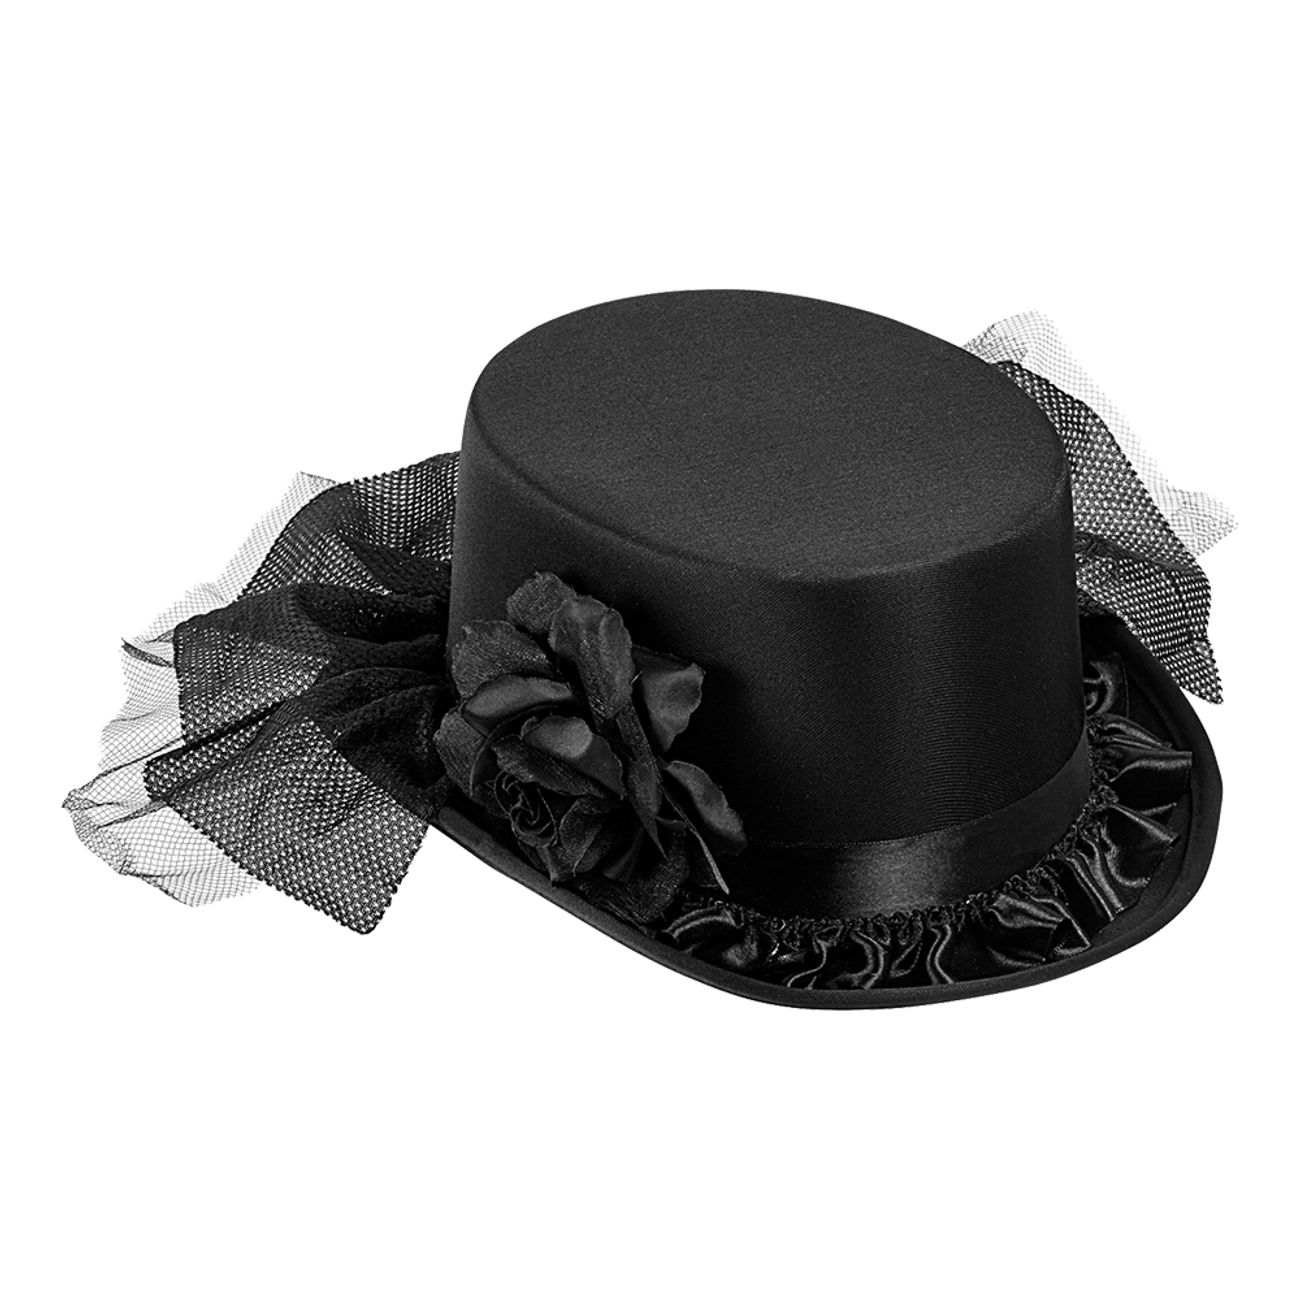 svart-hatt-med-ros-78007-1